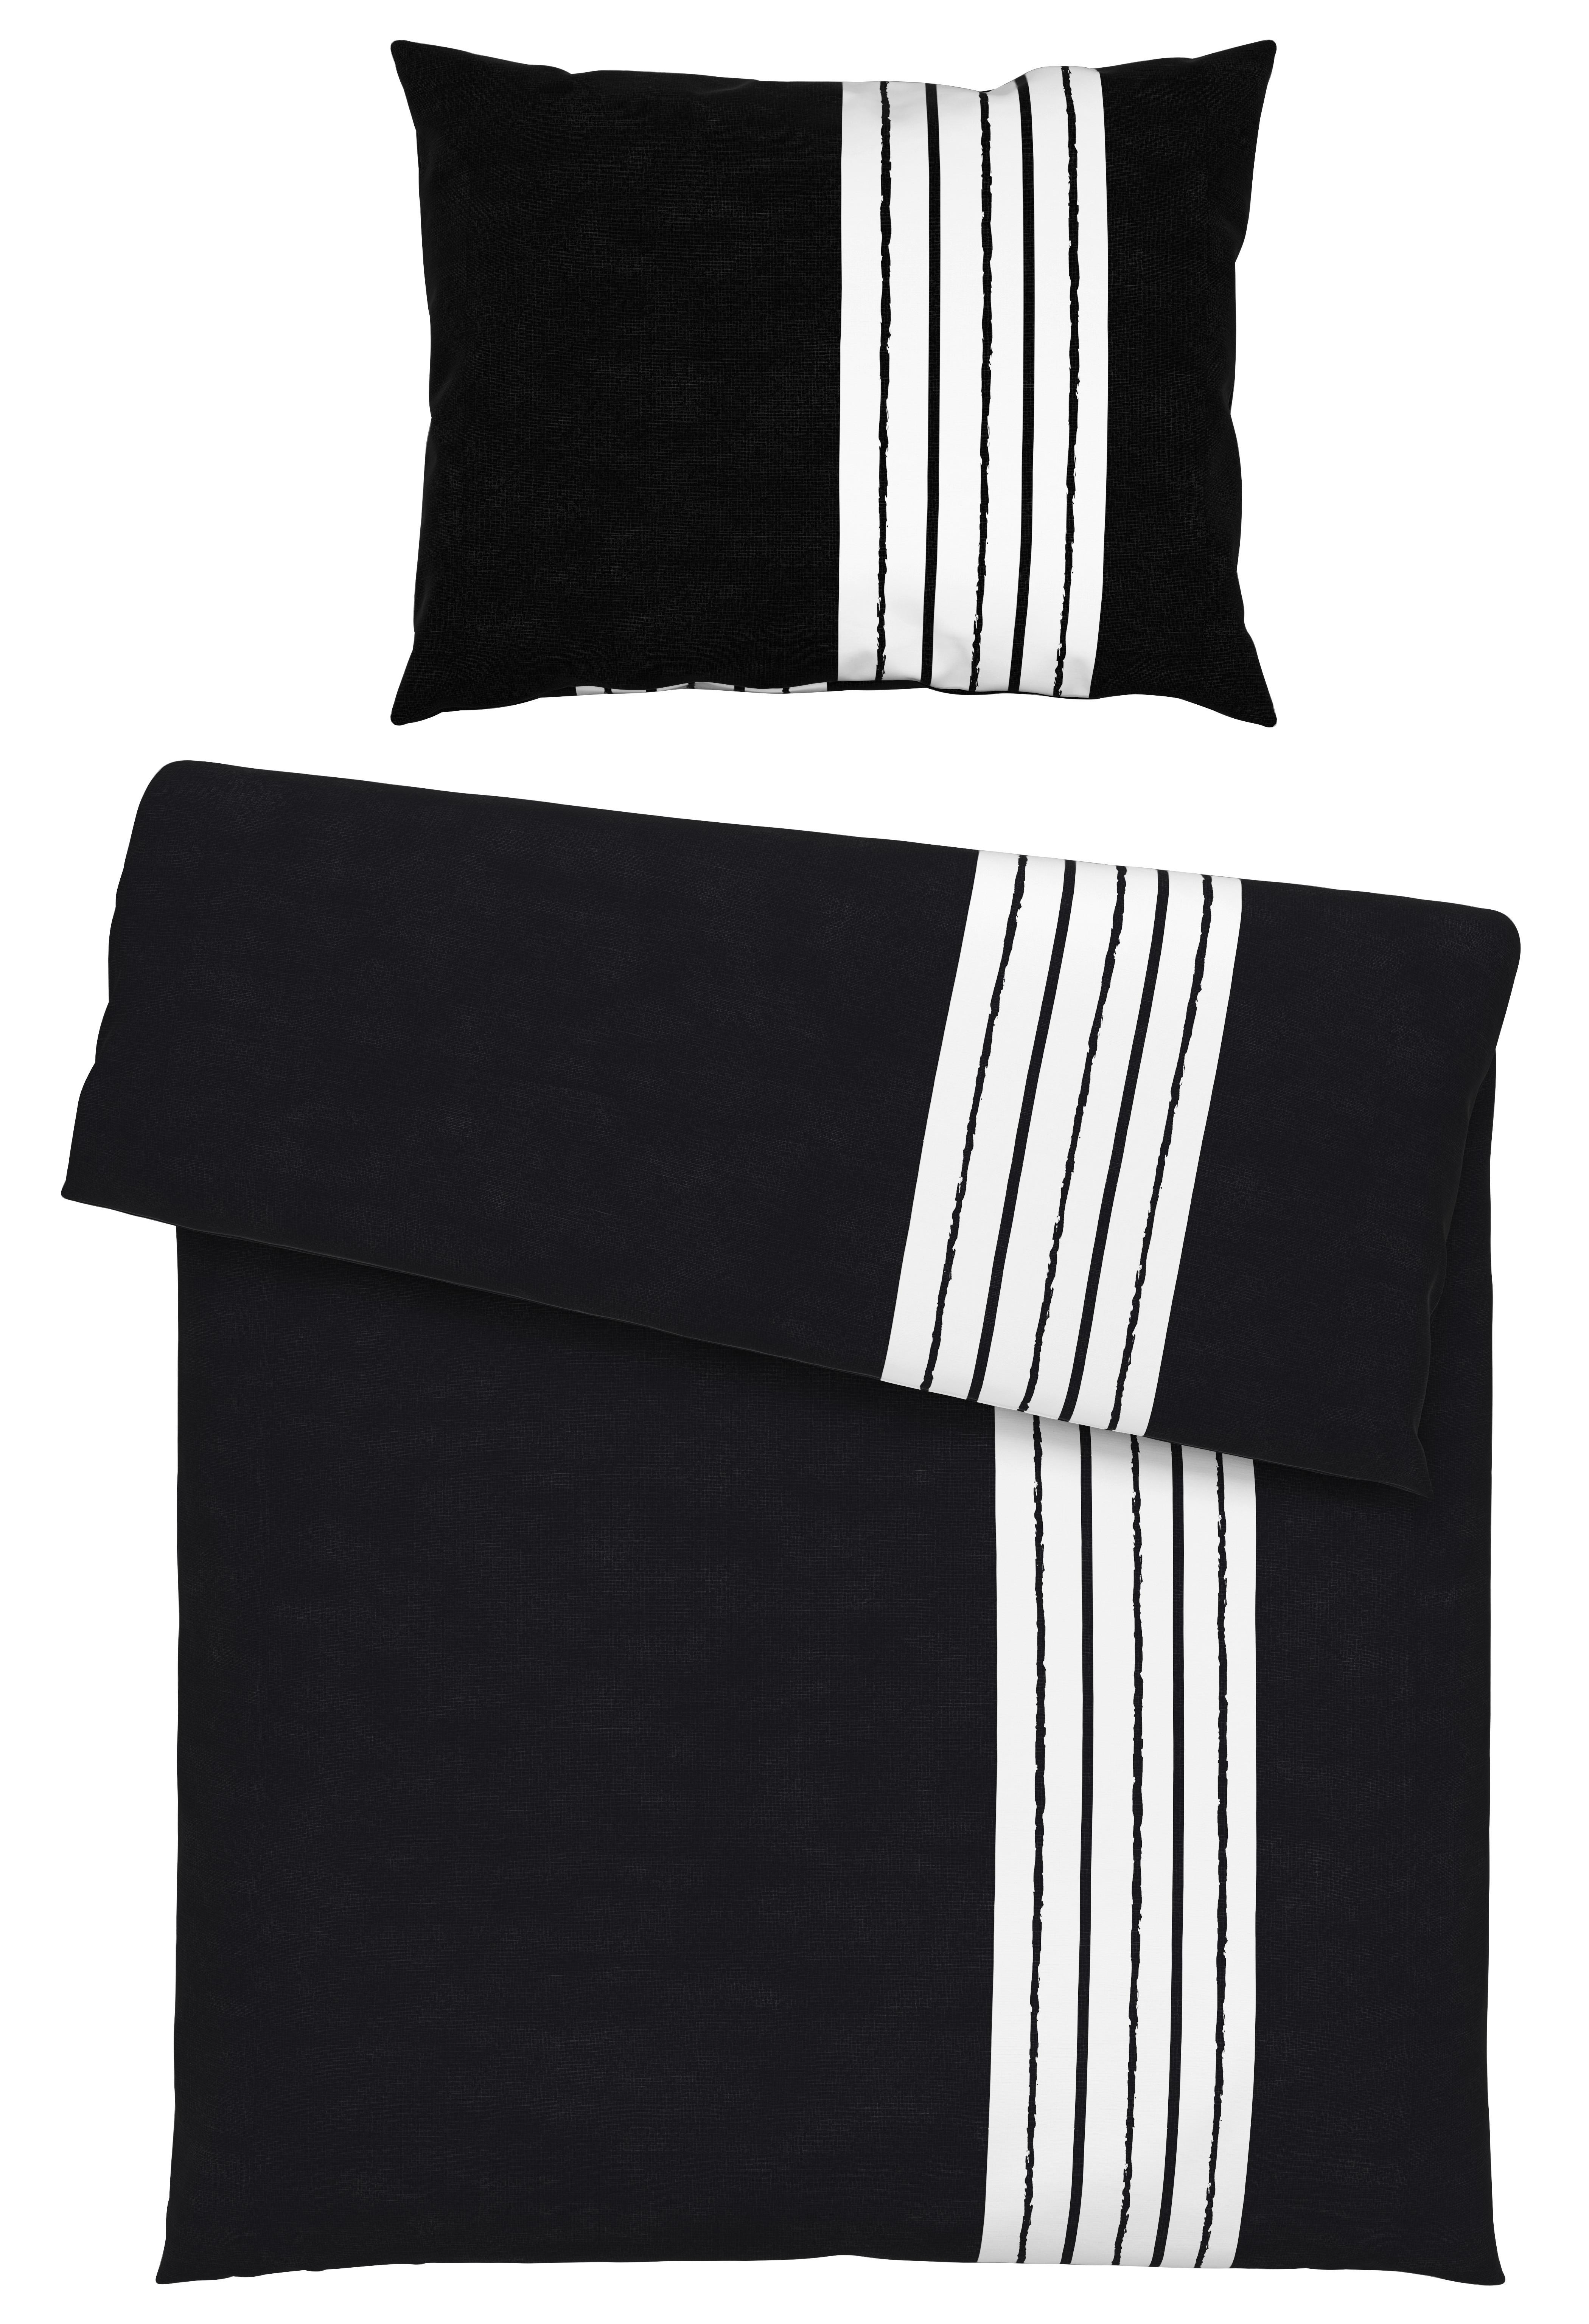 Povlečení Stripes, 140/200cm, Černá - černá, Moderní, textil (140/200cm) - Modern Living